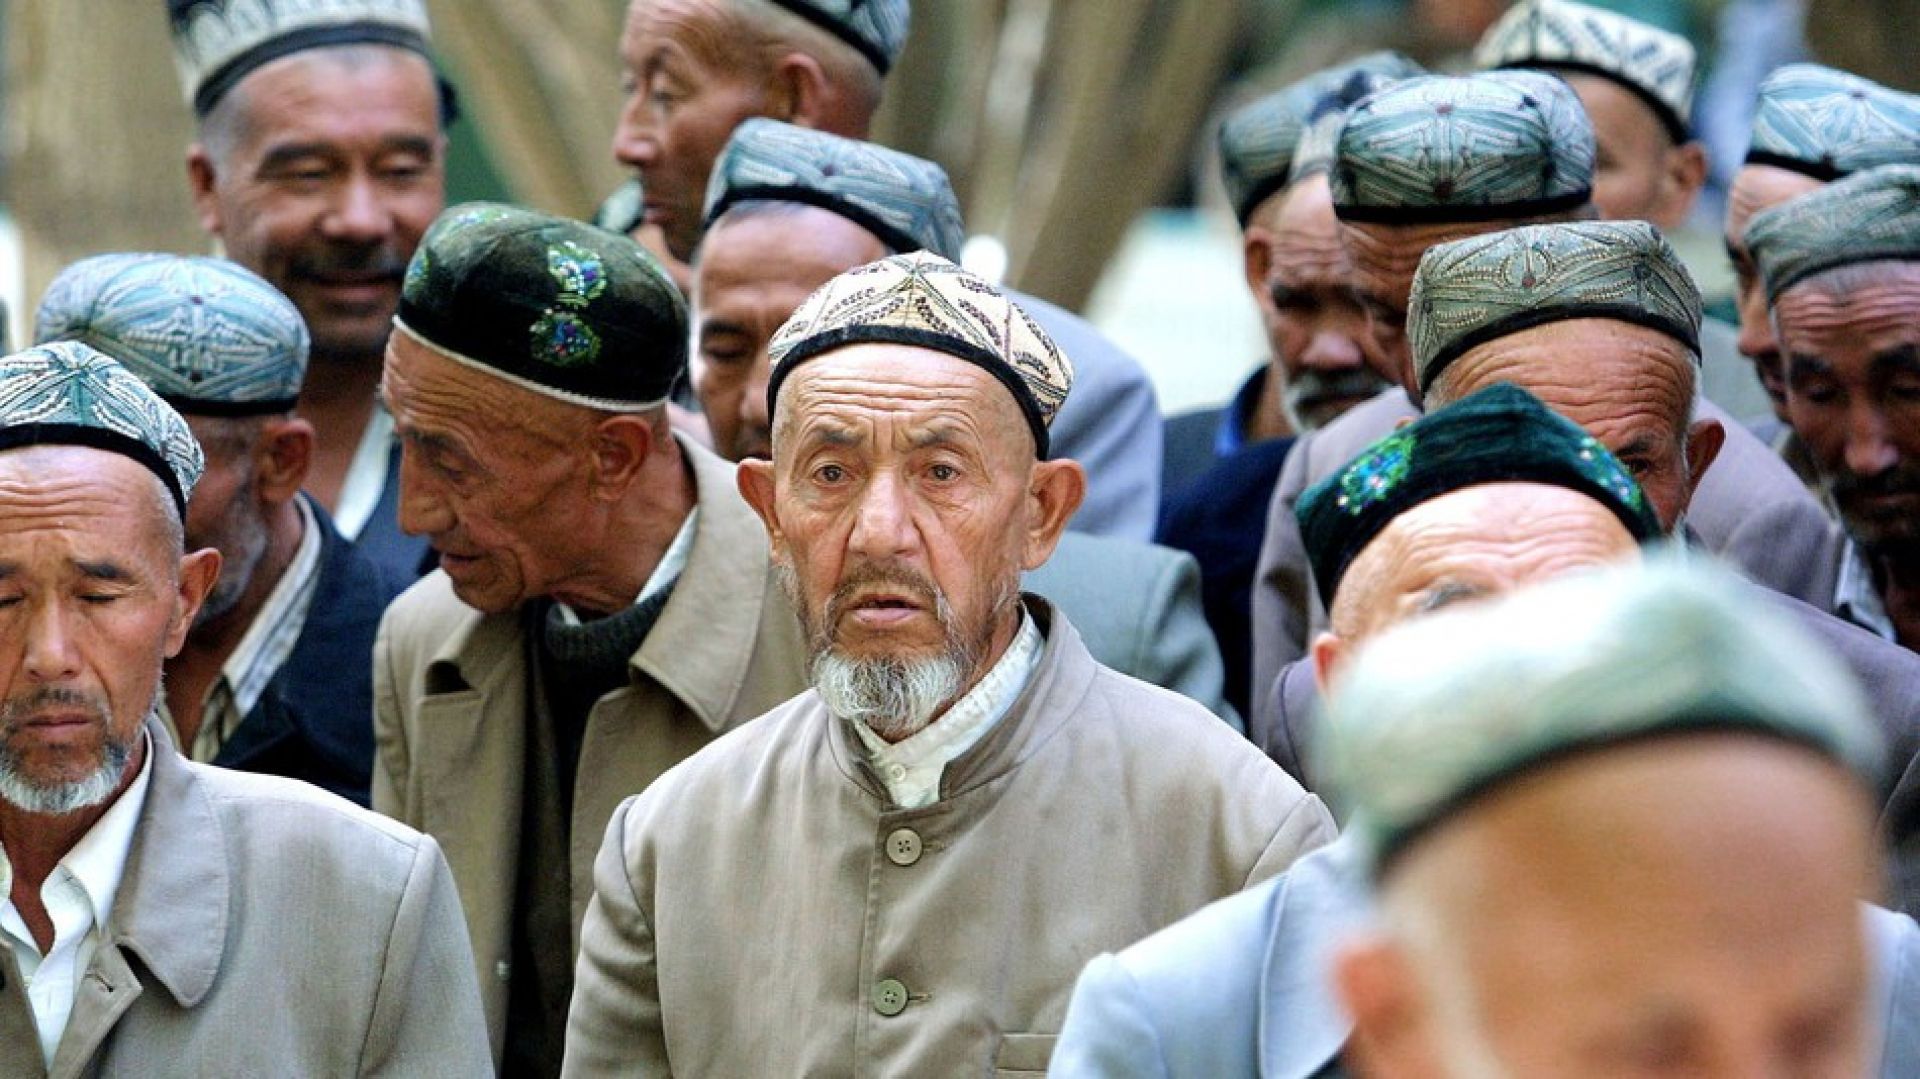 لماذا يصمت الإعلام العربي عن موقف الإيغور الداعم لـ "إسرائيل"؟